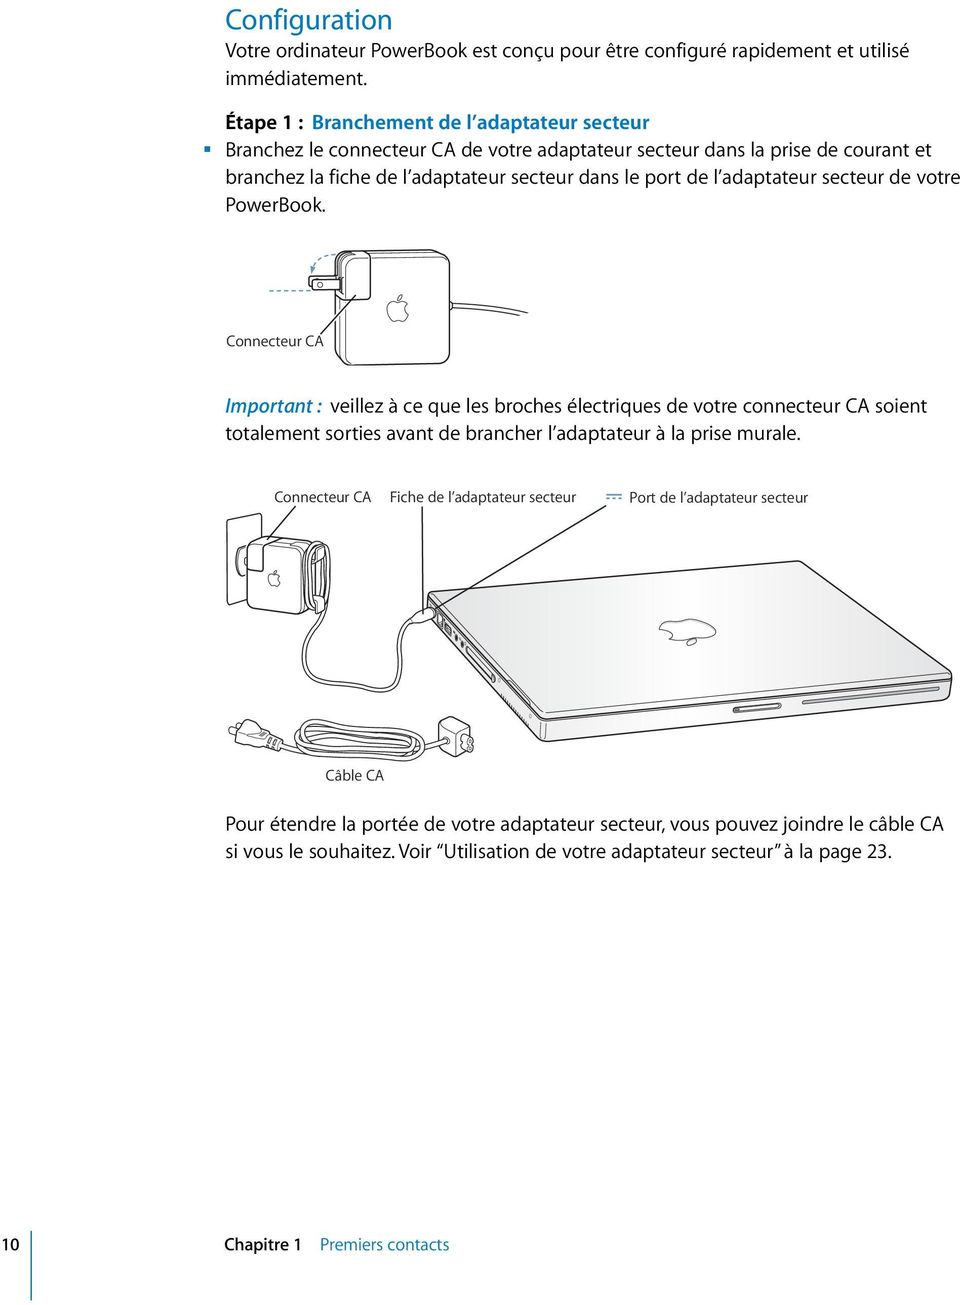 adaptateur secteur de votre PowerBook.